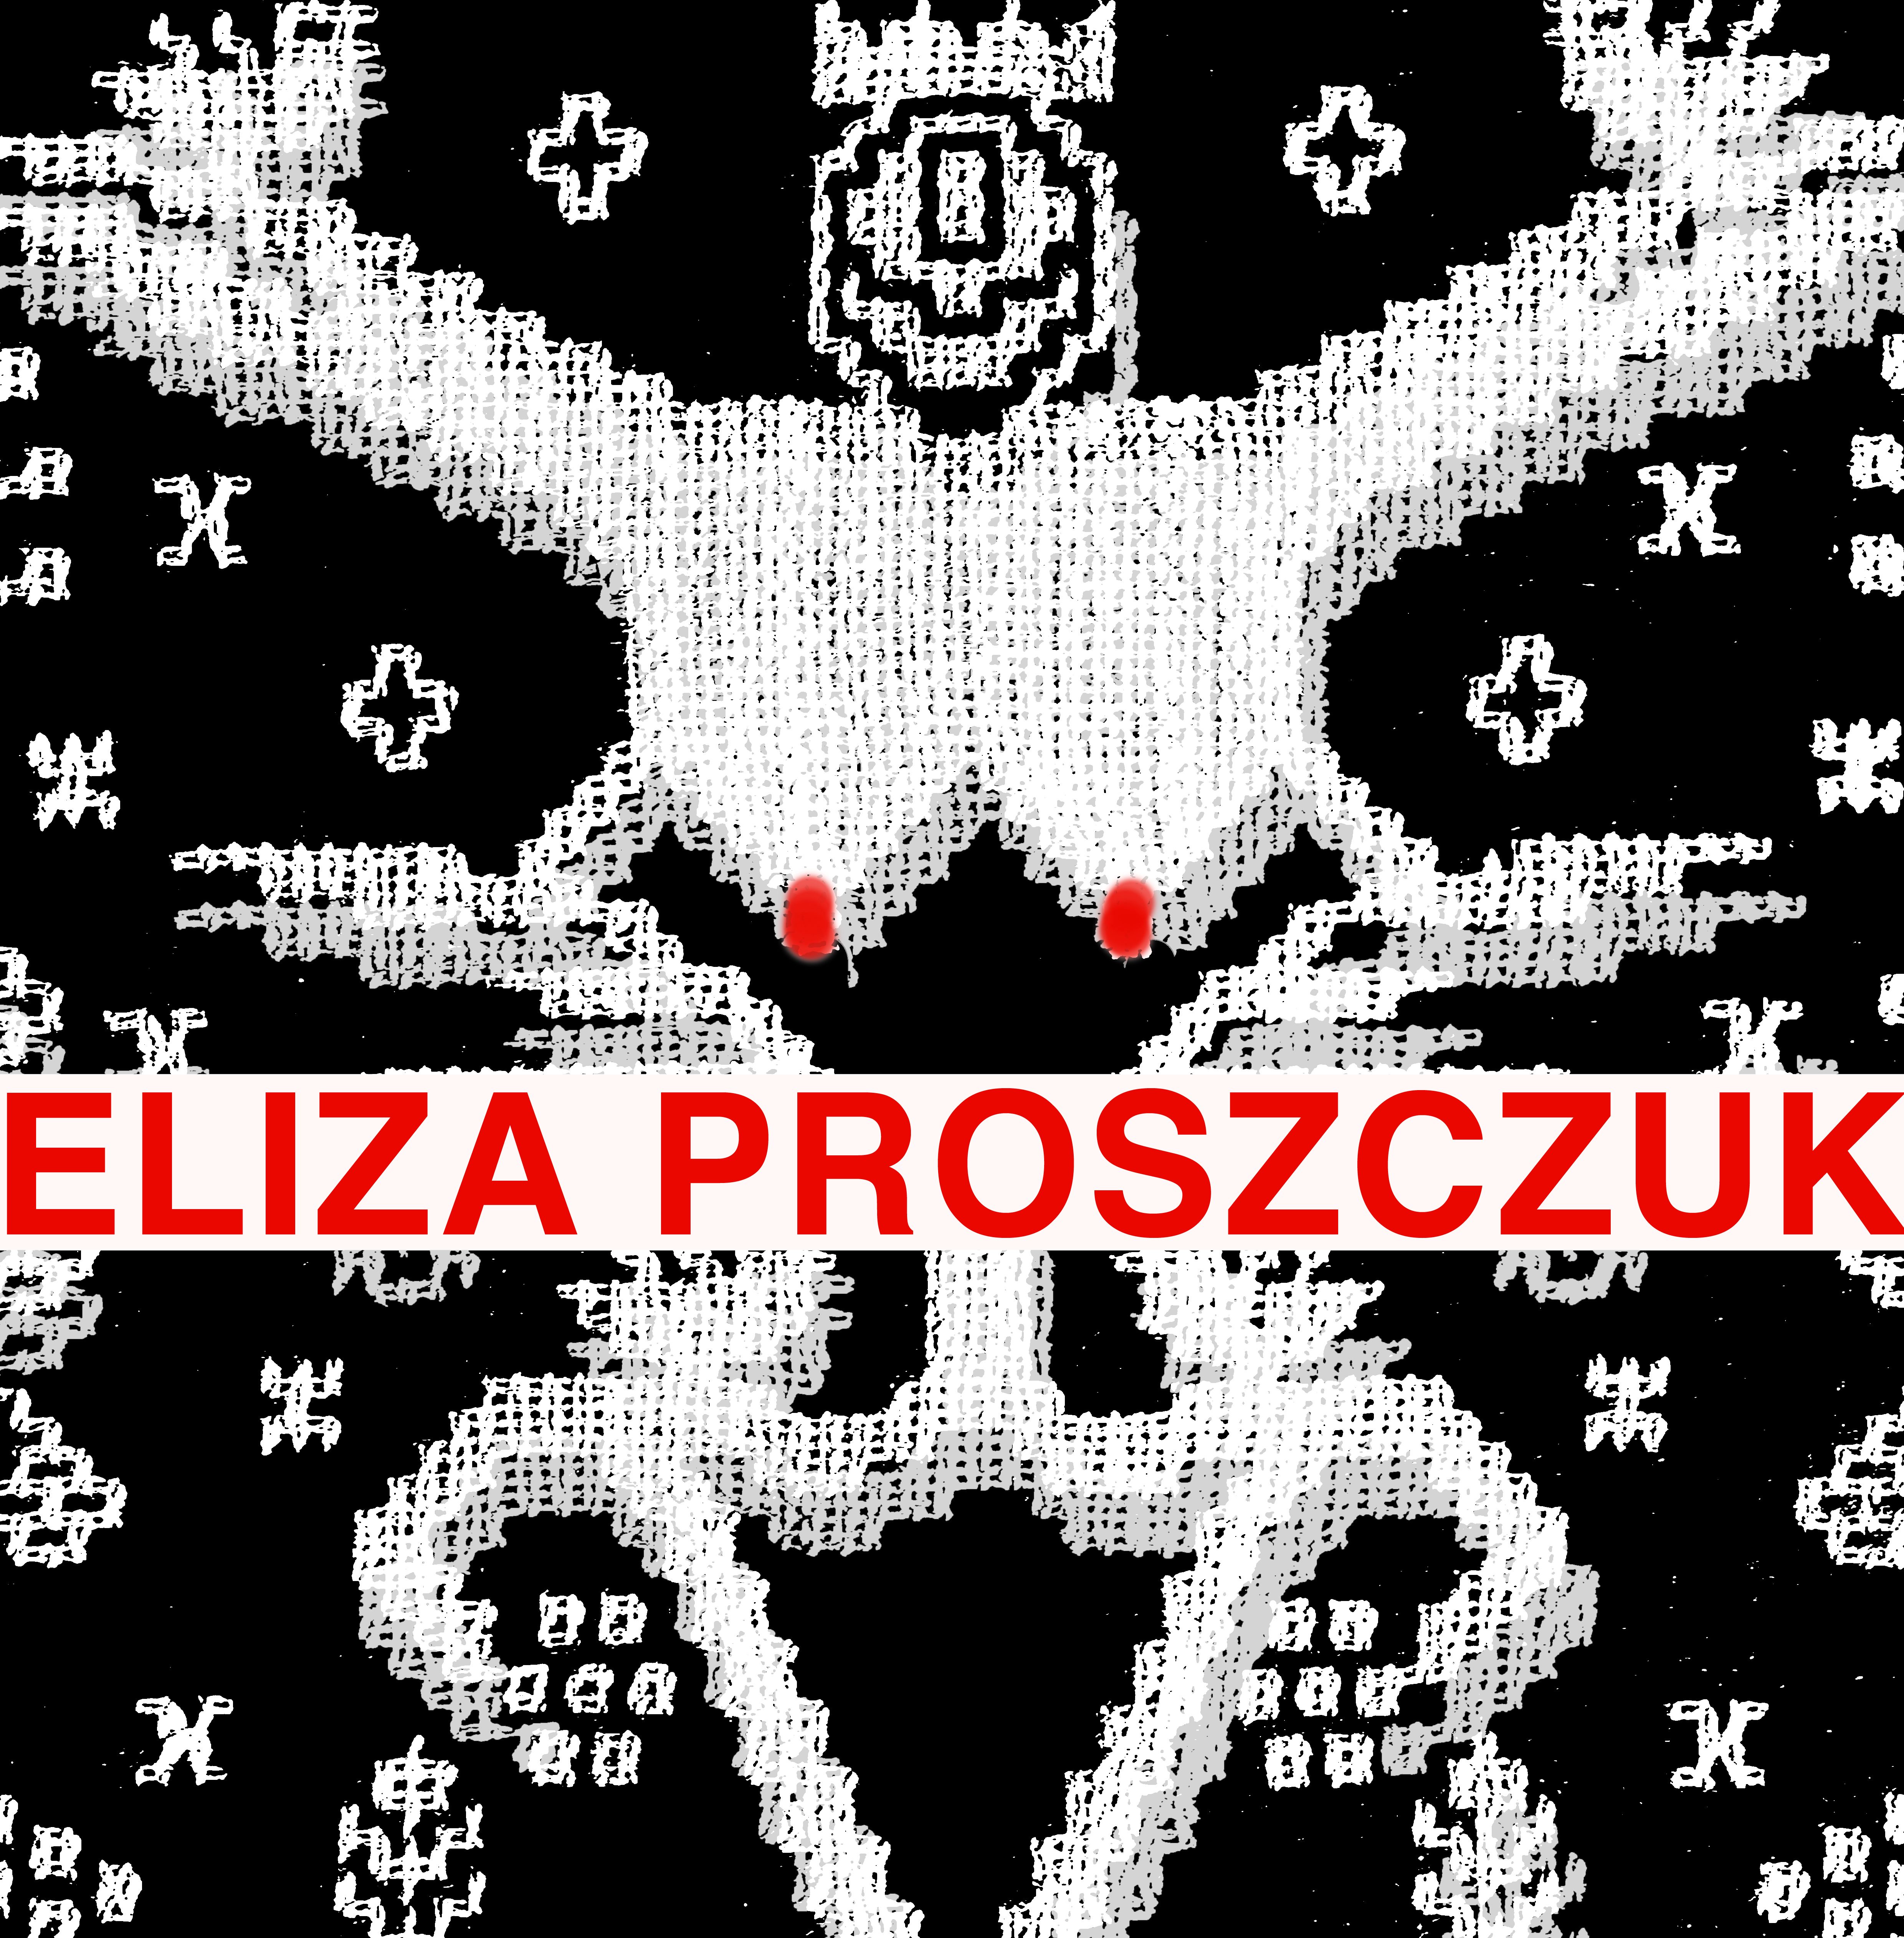 Eliza Proszczuk